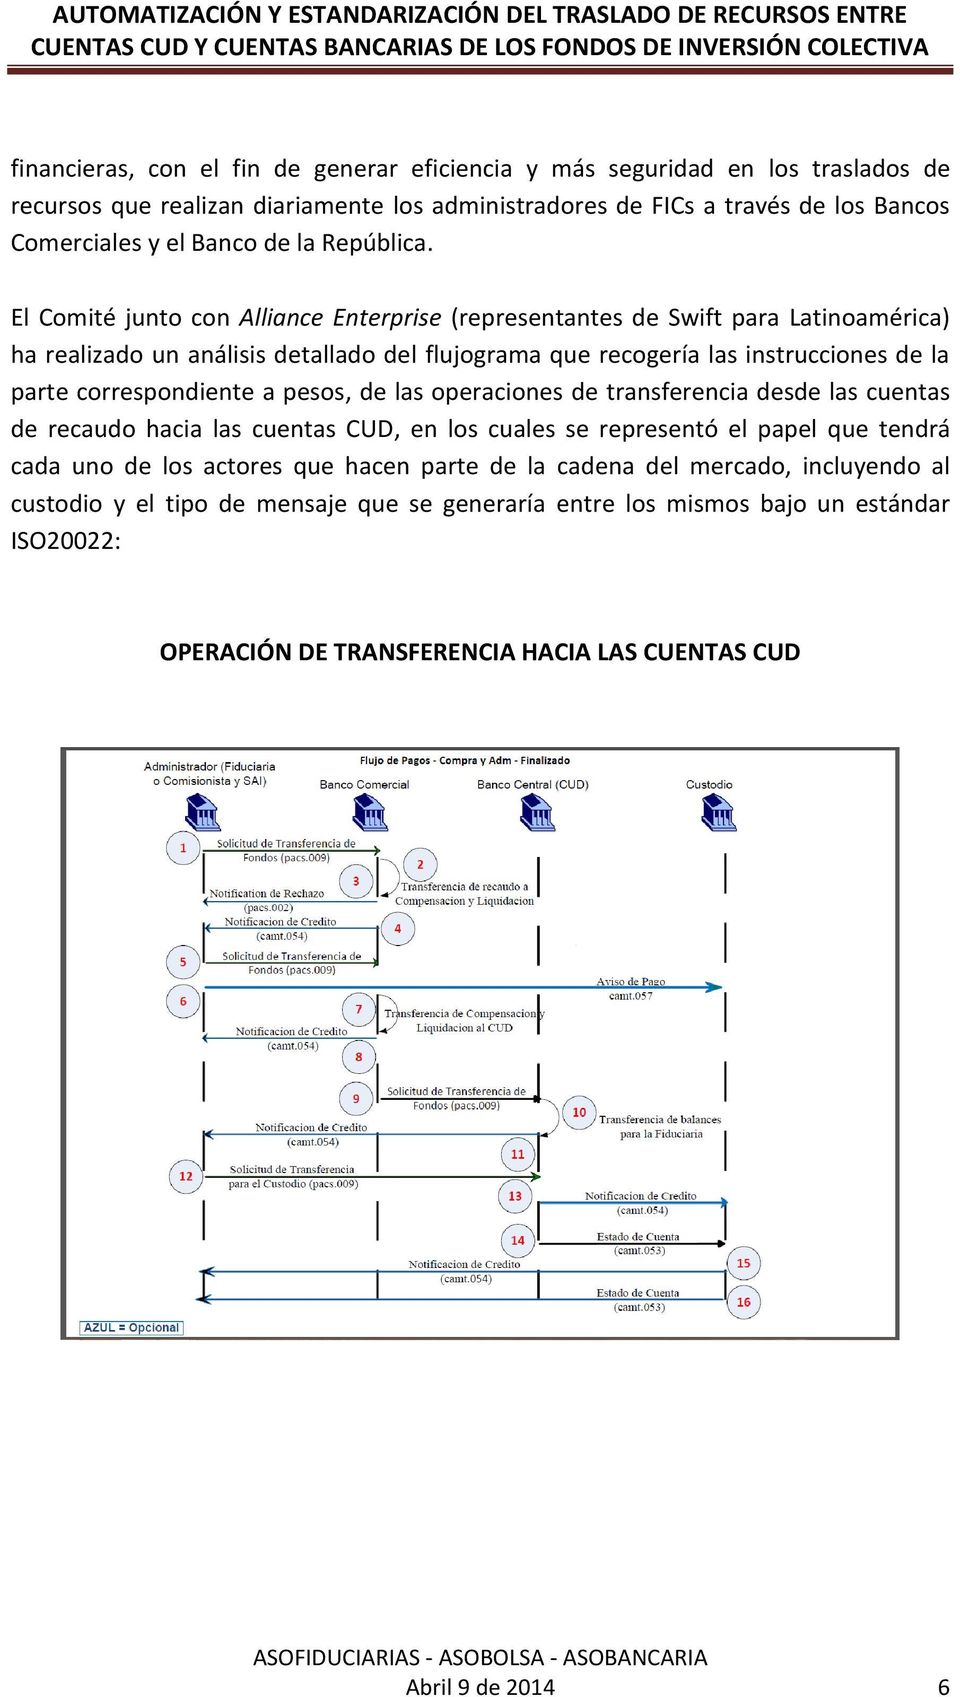 El Comité junto con Alliance Enterprise (representantes de Swift para Latinoamérica) ha realizado un análisis detallado del flujograma que recogería las instrucciones de la parte correspondiente